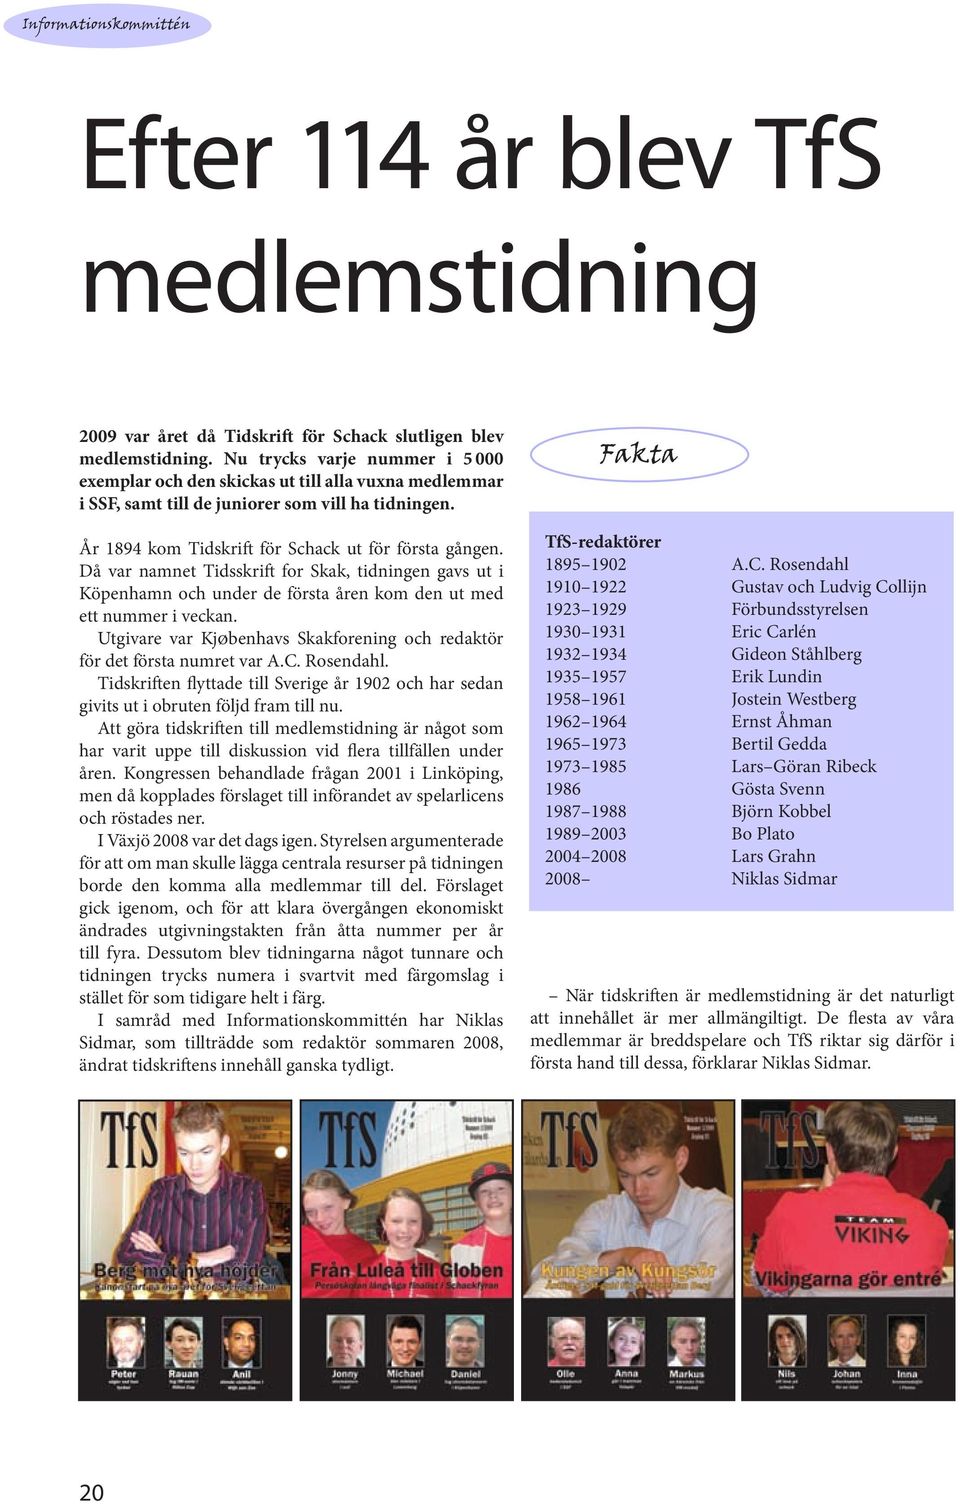 Då var namnet Tidsskrift for Skak, tidningen gavs ut i Köpenhamn och under de första åren kom den ut med ett nummer i veckan.